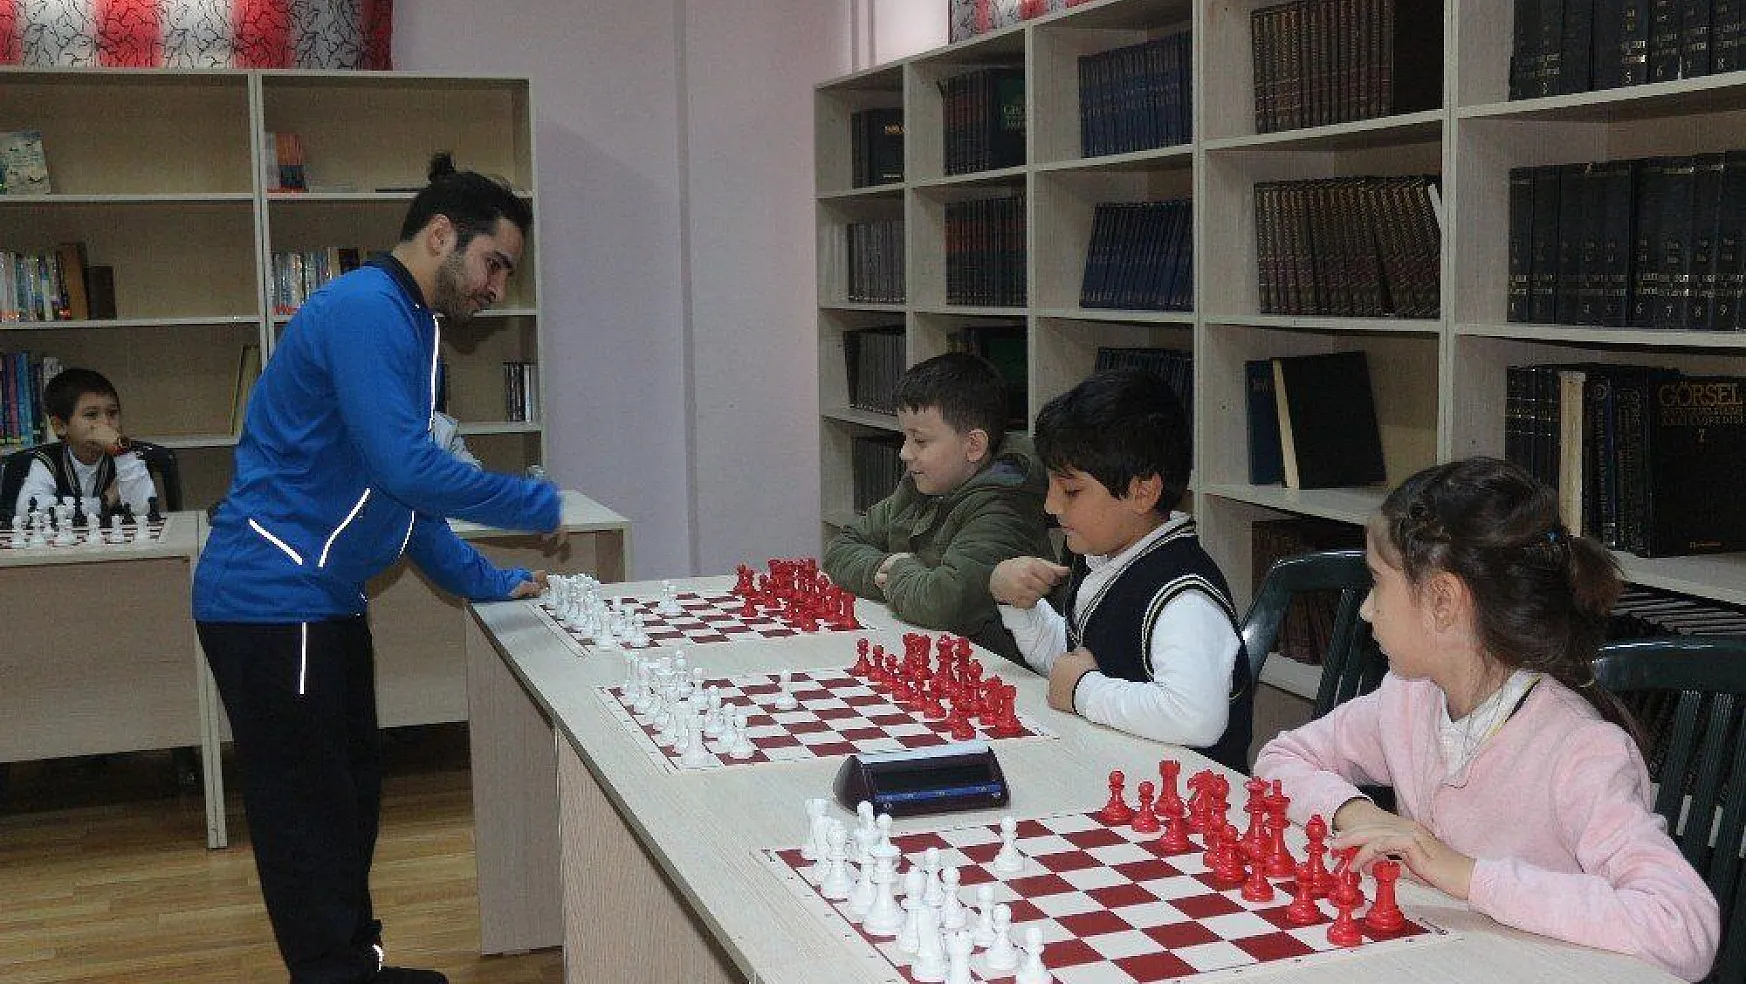 Engelli sporcu aynı anda 15 öğrenciyle satranç oynadı